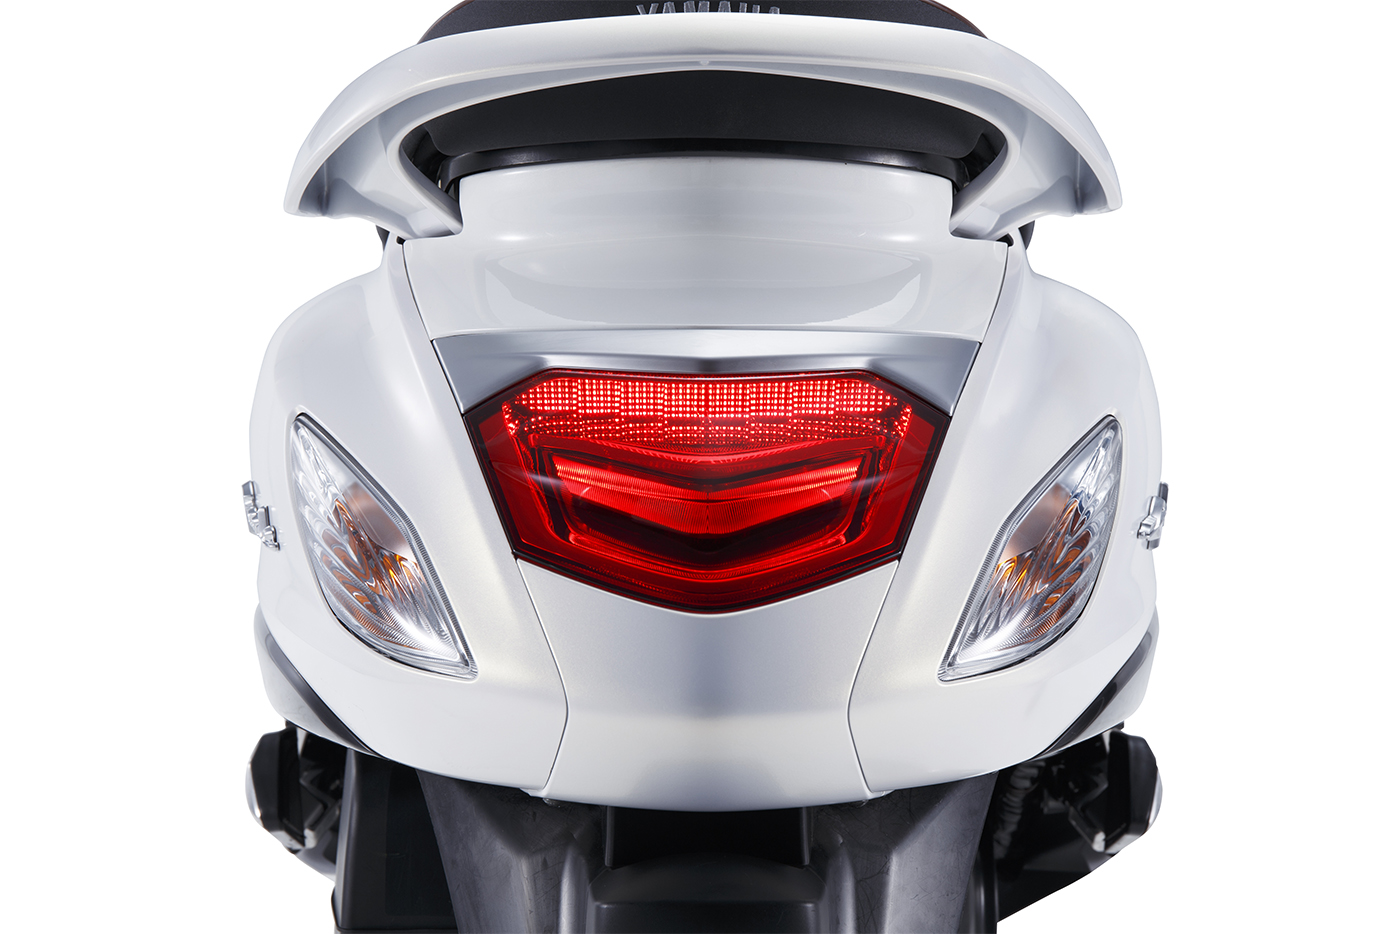 ‘Điểm mặt’ những tính năng mới trên Yamaha Grande Hybrid 2019 giá 45,5 triệu đồng